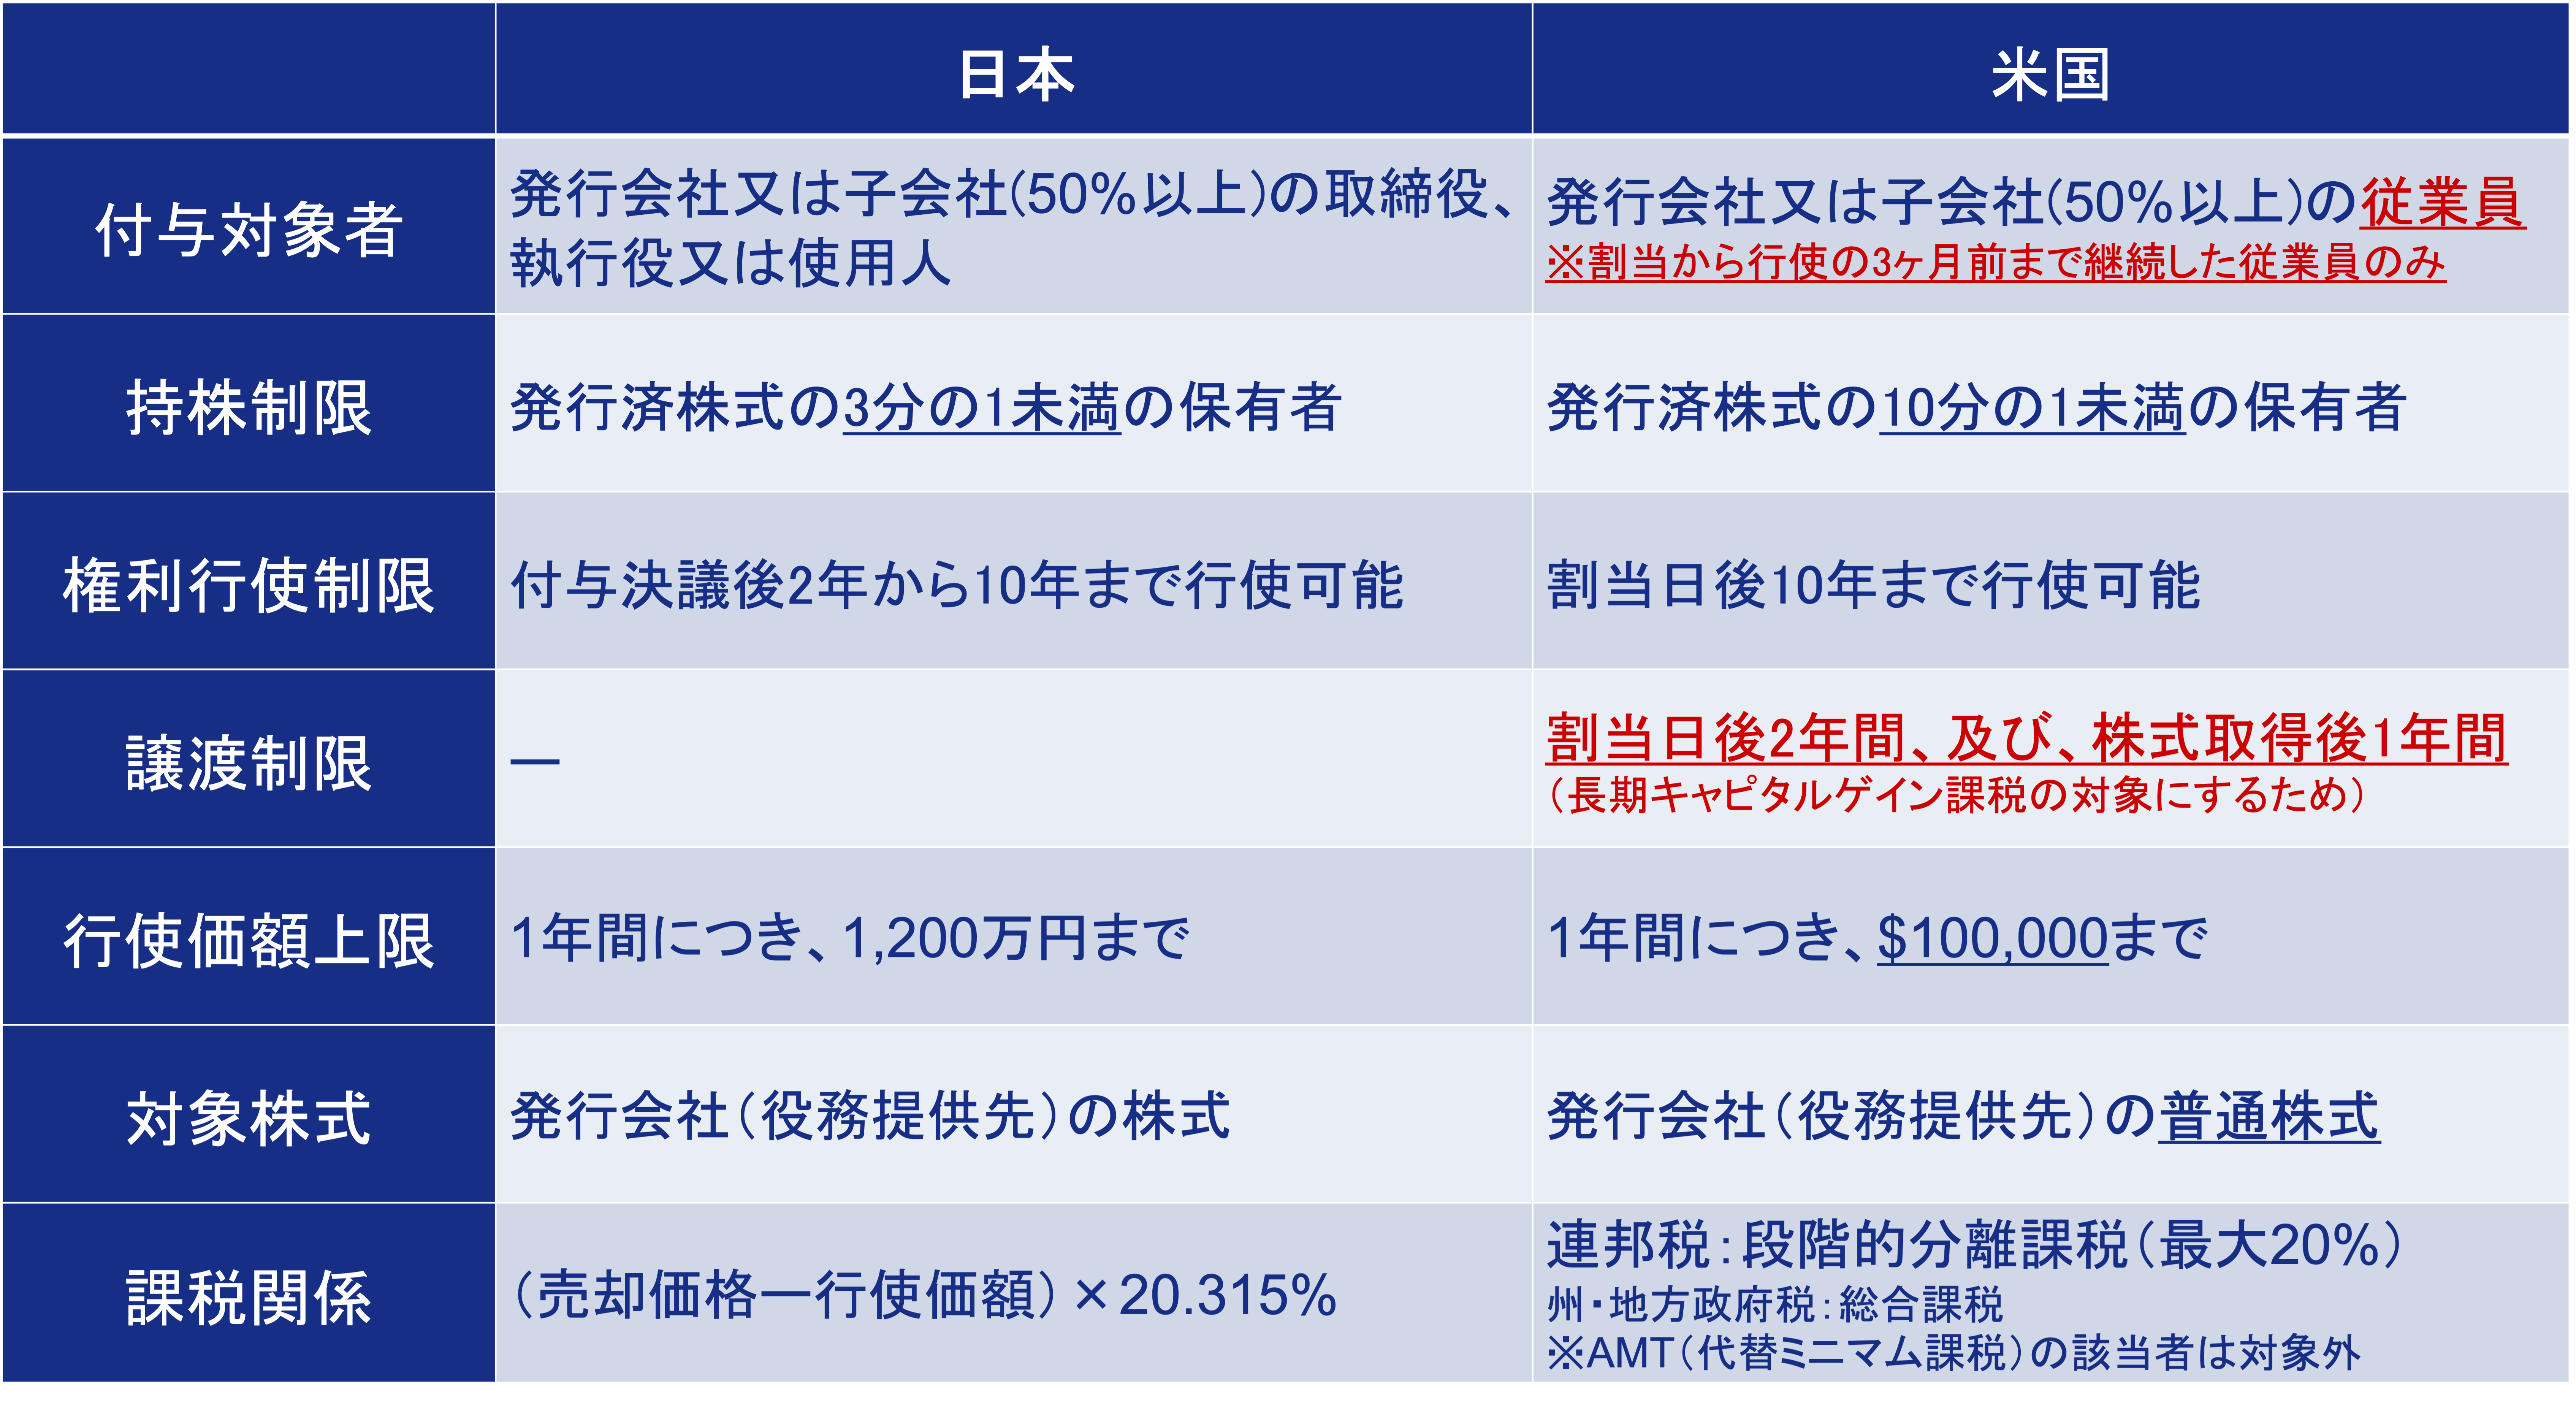 日米における税制適格要件の違い